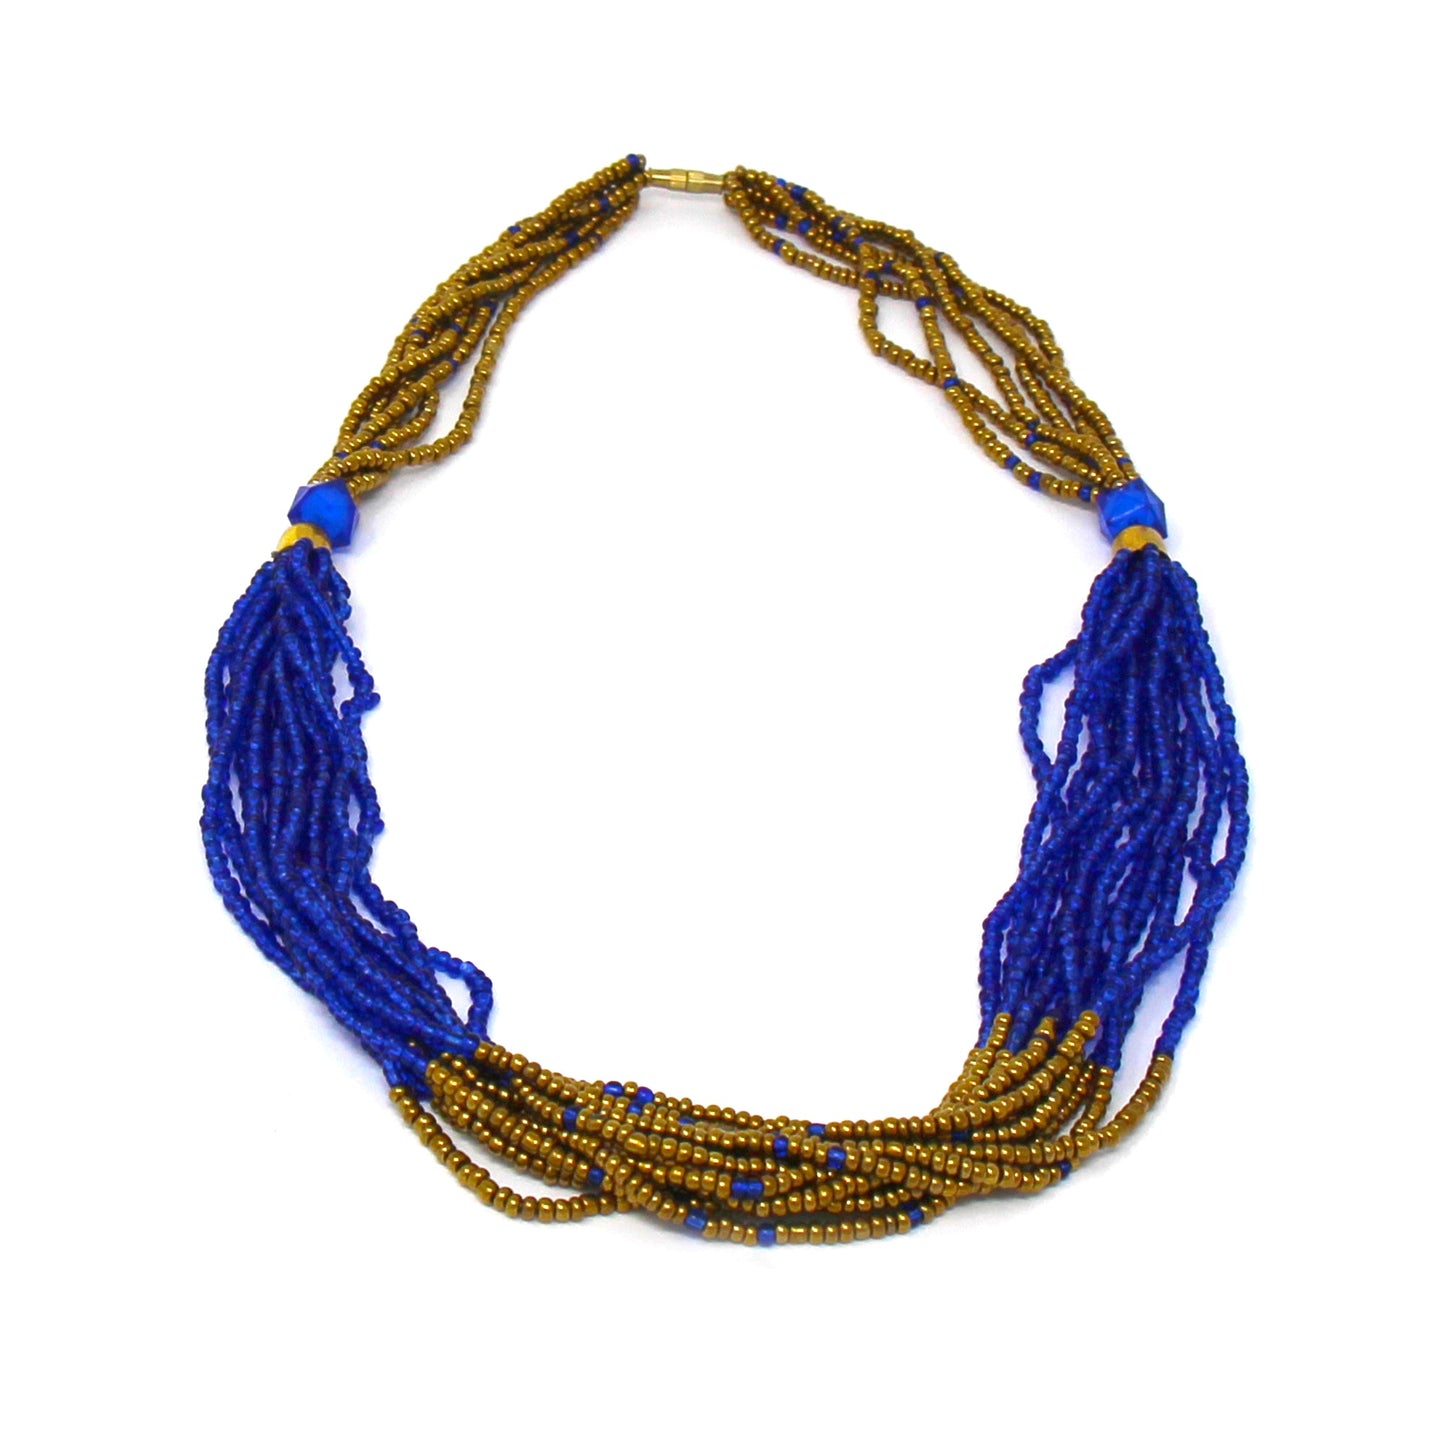 Collar de cuentas masai multihilo, lapislázuli azul y dorado